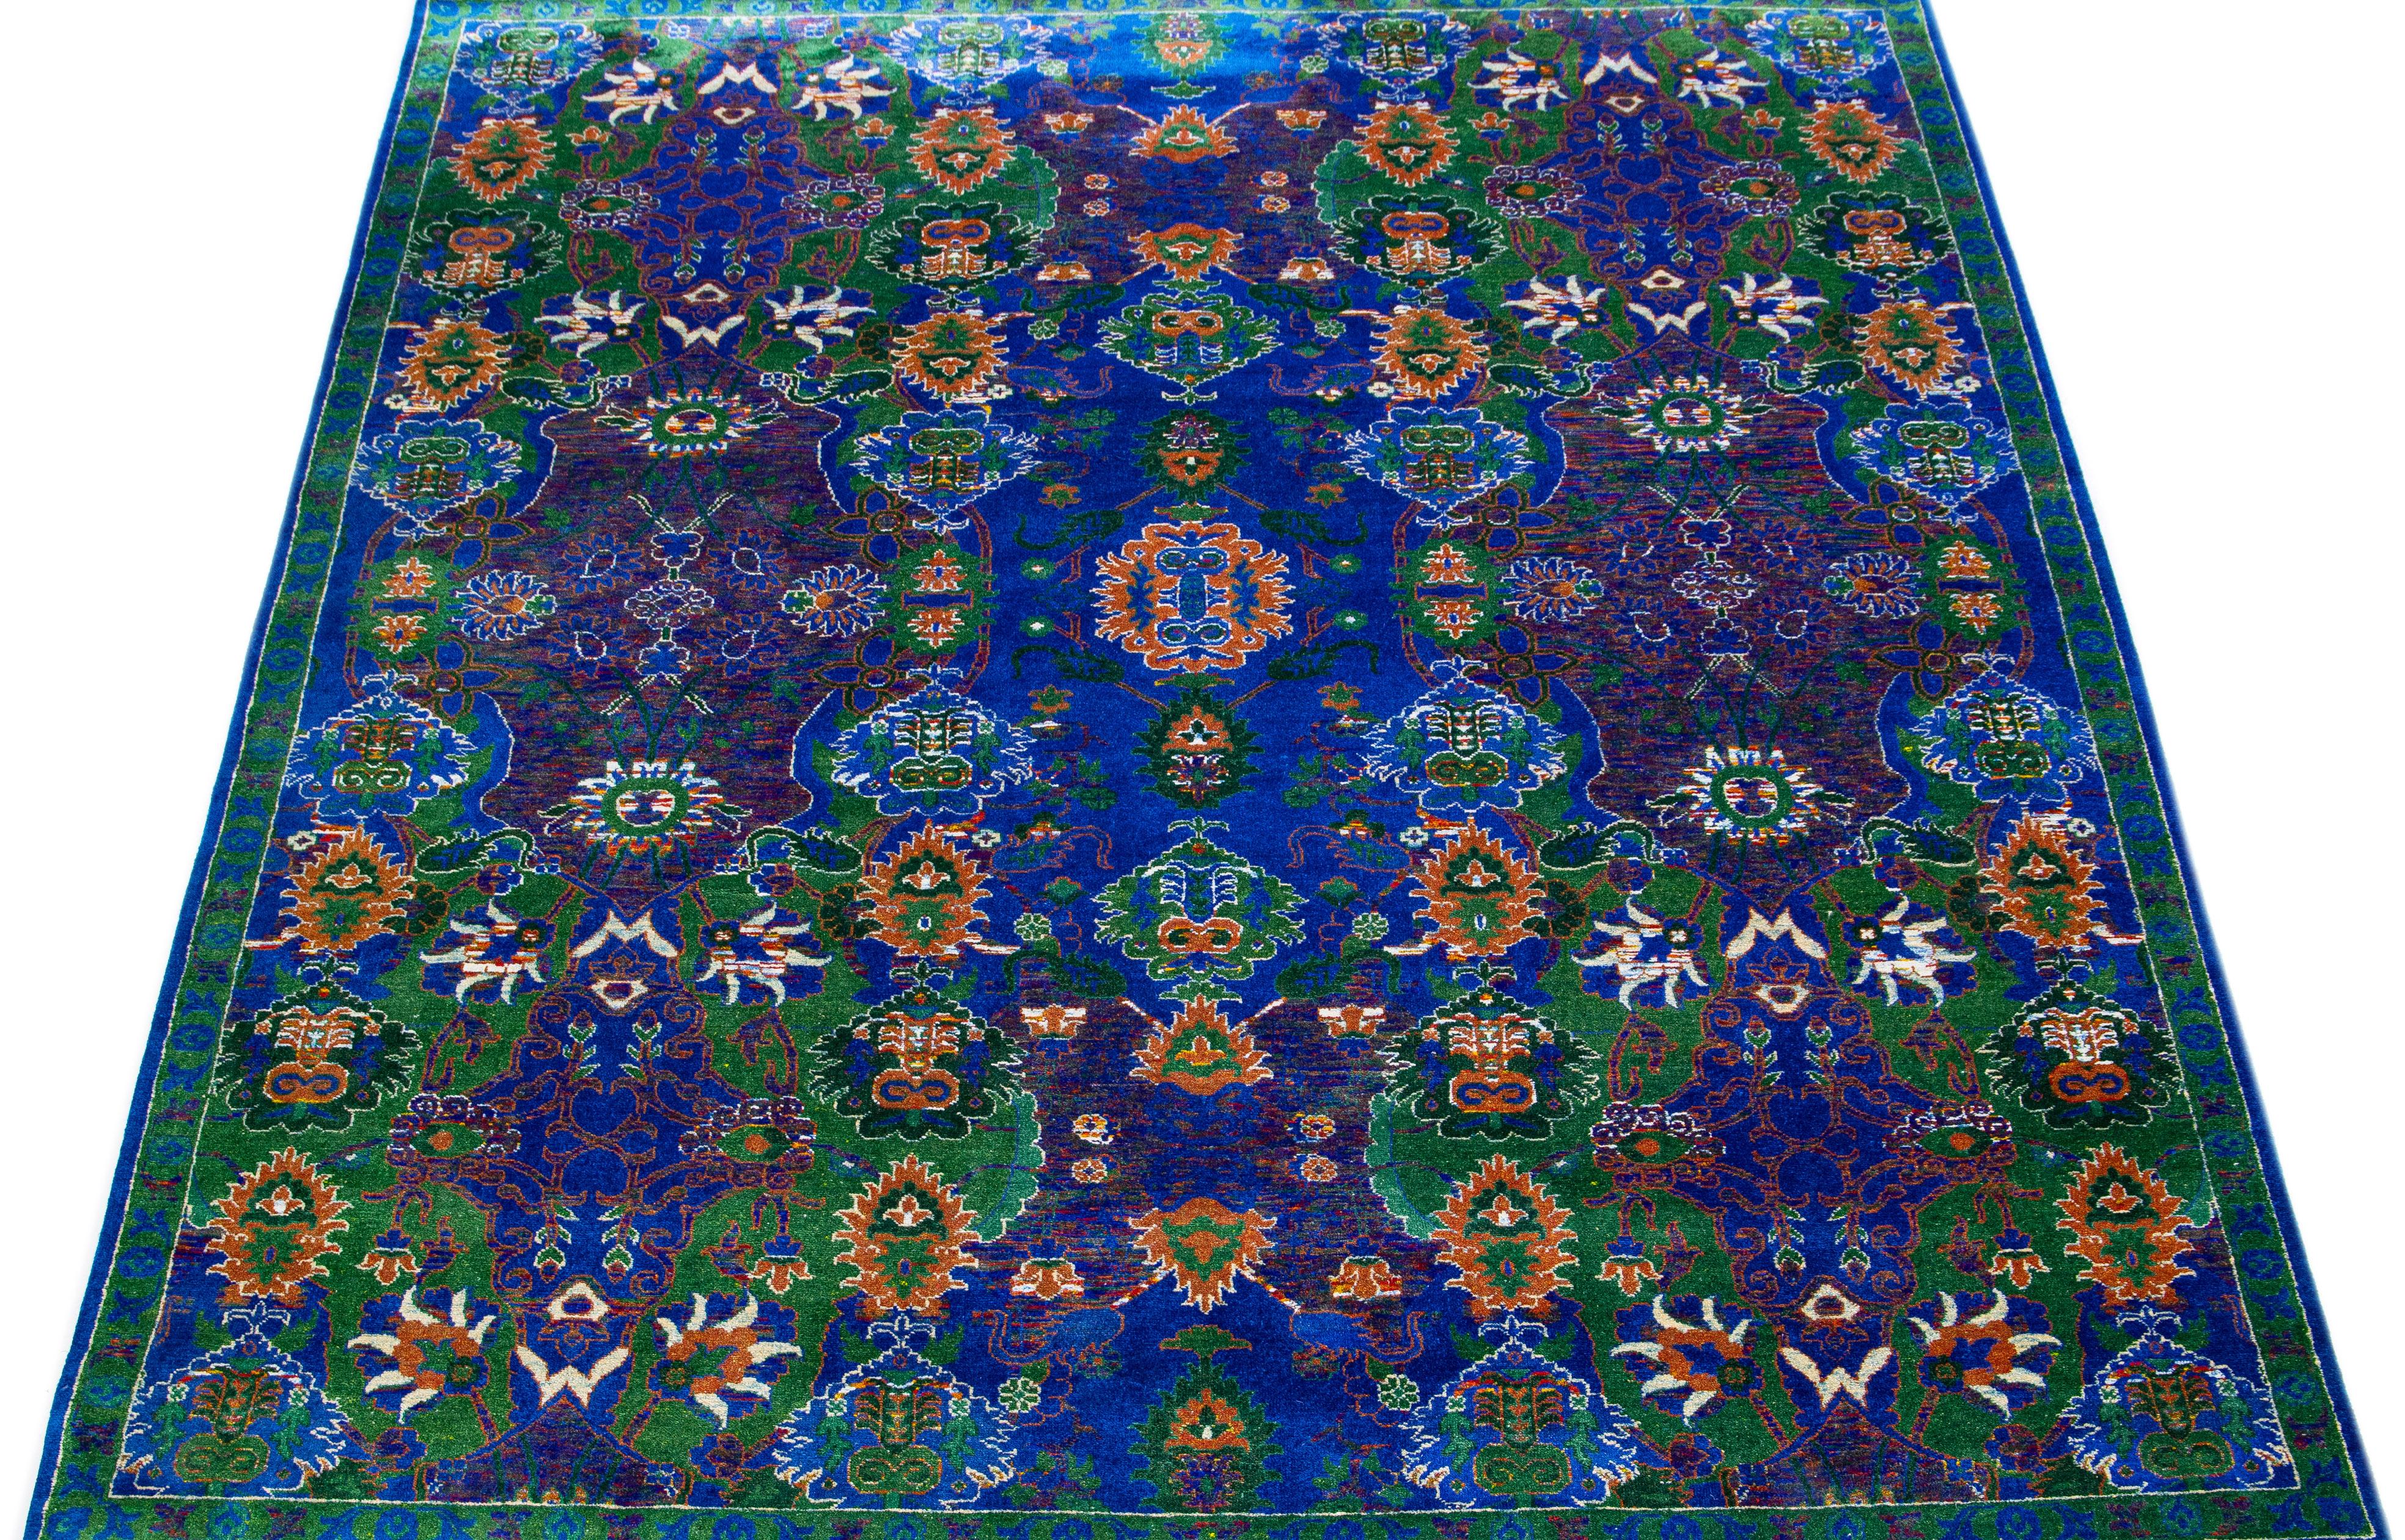 Dieser luxuriöse, raffiniert gewebte Flächenteppich ist eine Mischung aus indischer Wolle und Seide. Der blaue Hintergrund ist mit einem eleganten Blumenmuster verziert, das mit grünen und orangefarbenen Farbtupfern für einen kräftigen Farbakzent